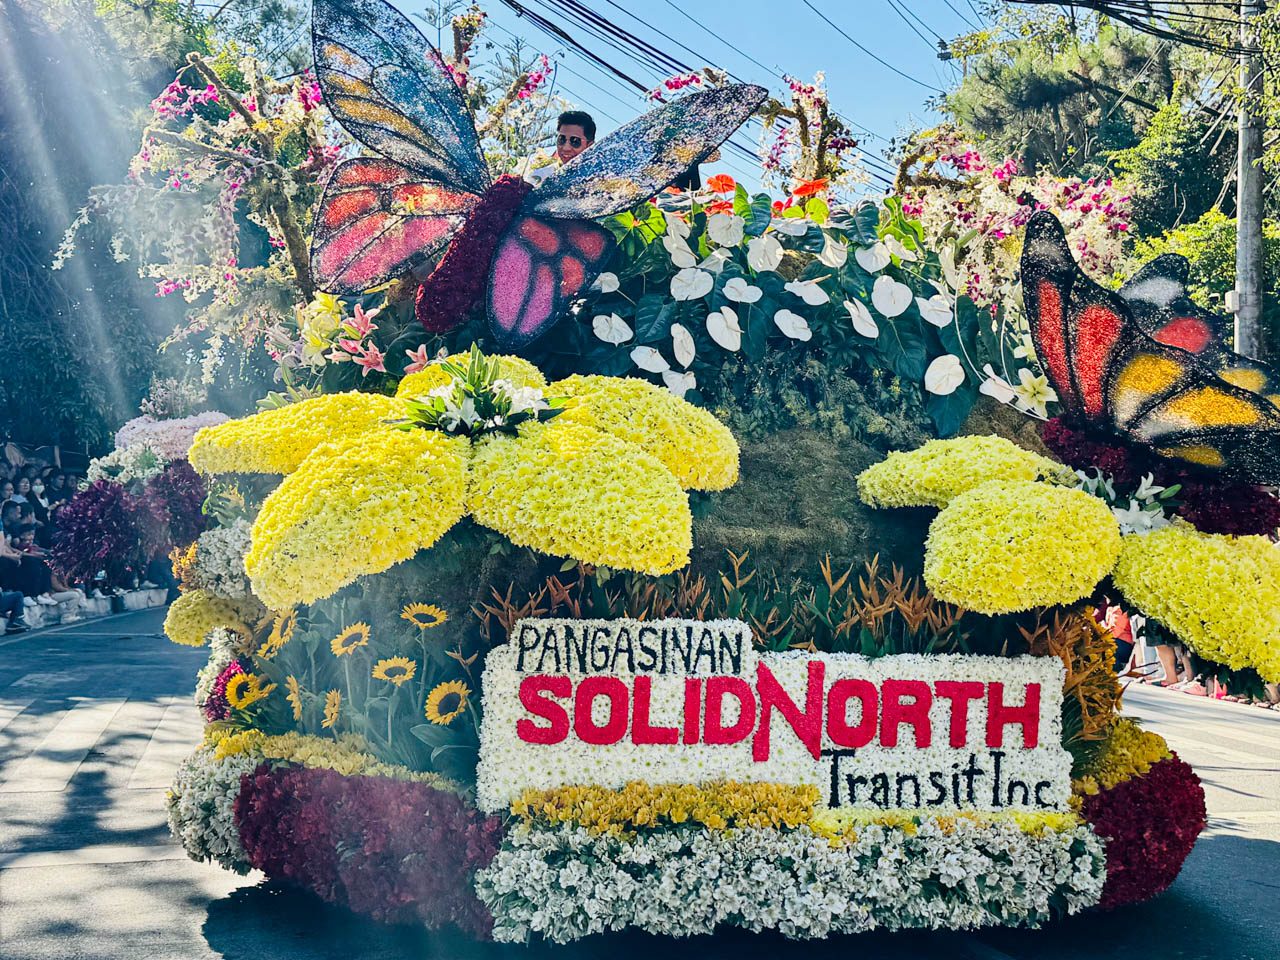 Popular flower festival returns in the Philippines - UCA News